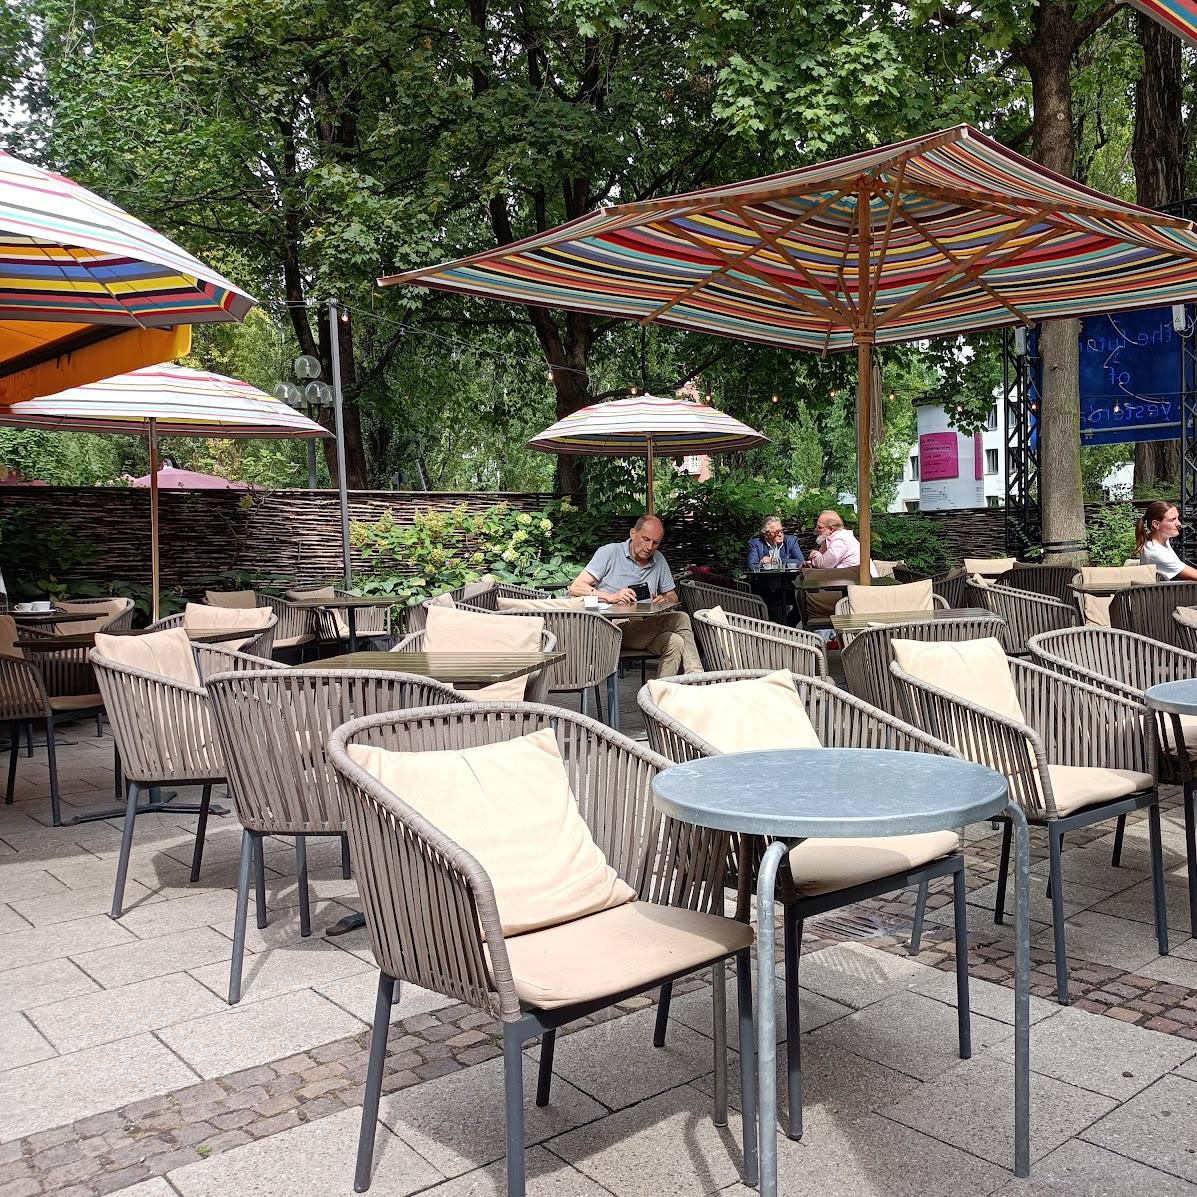 Restaurant "Bar Giornale" in München